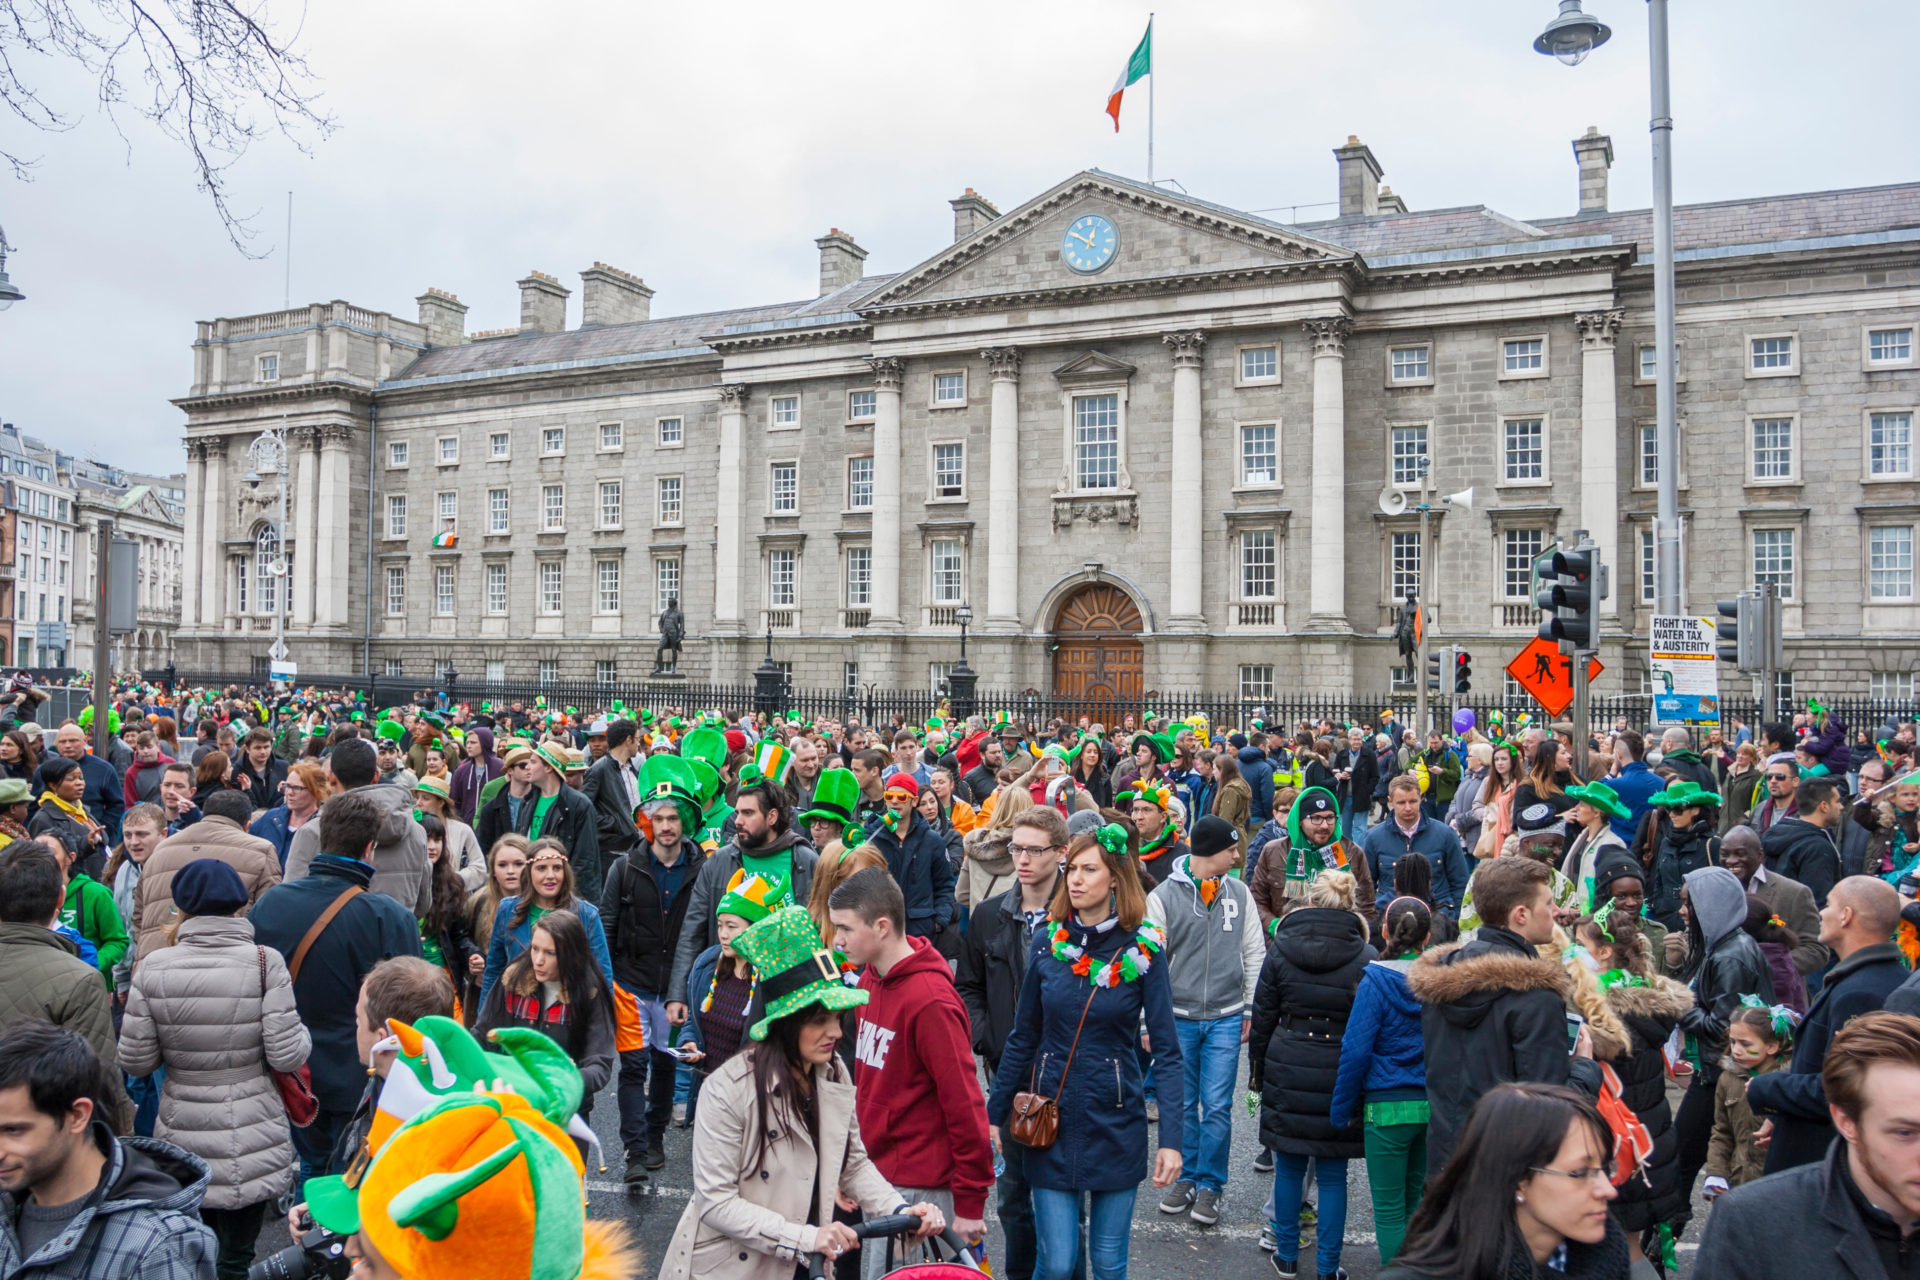 St Patrick's Day in Dublin 